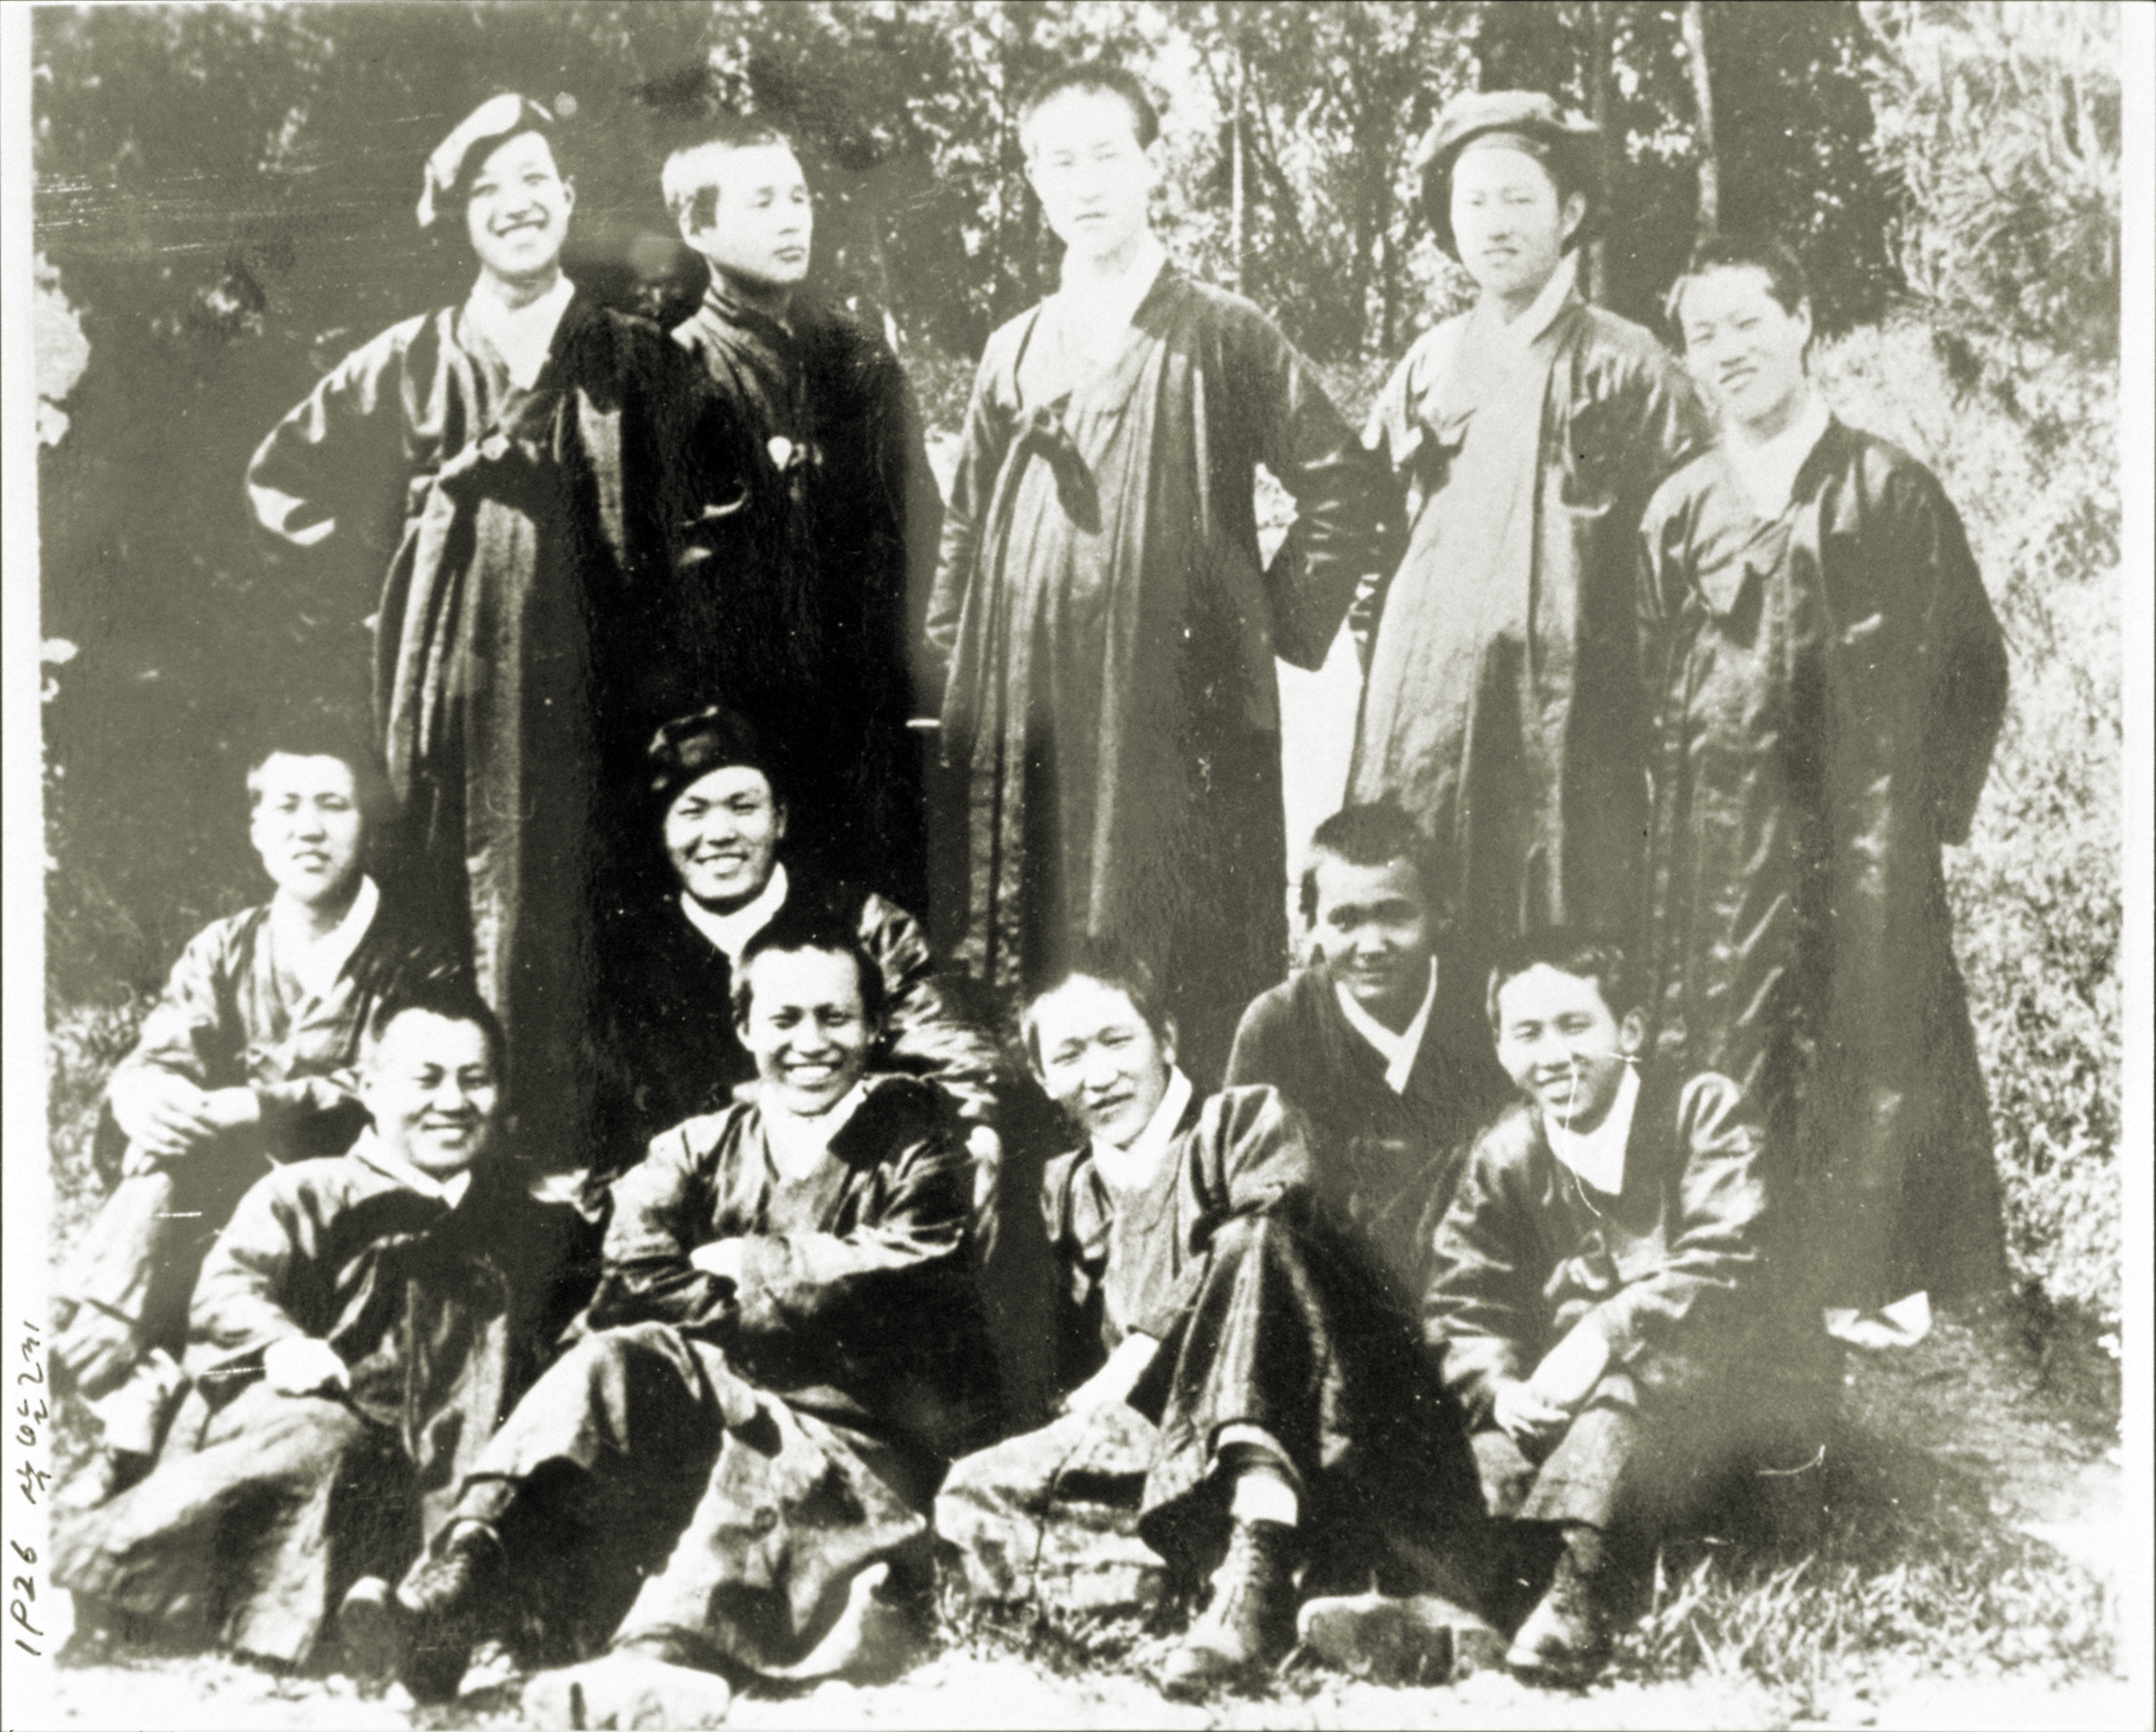 용산 예수성심신학교(1887~1942) (2)의 관련된 이미지 입니다.